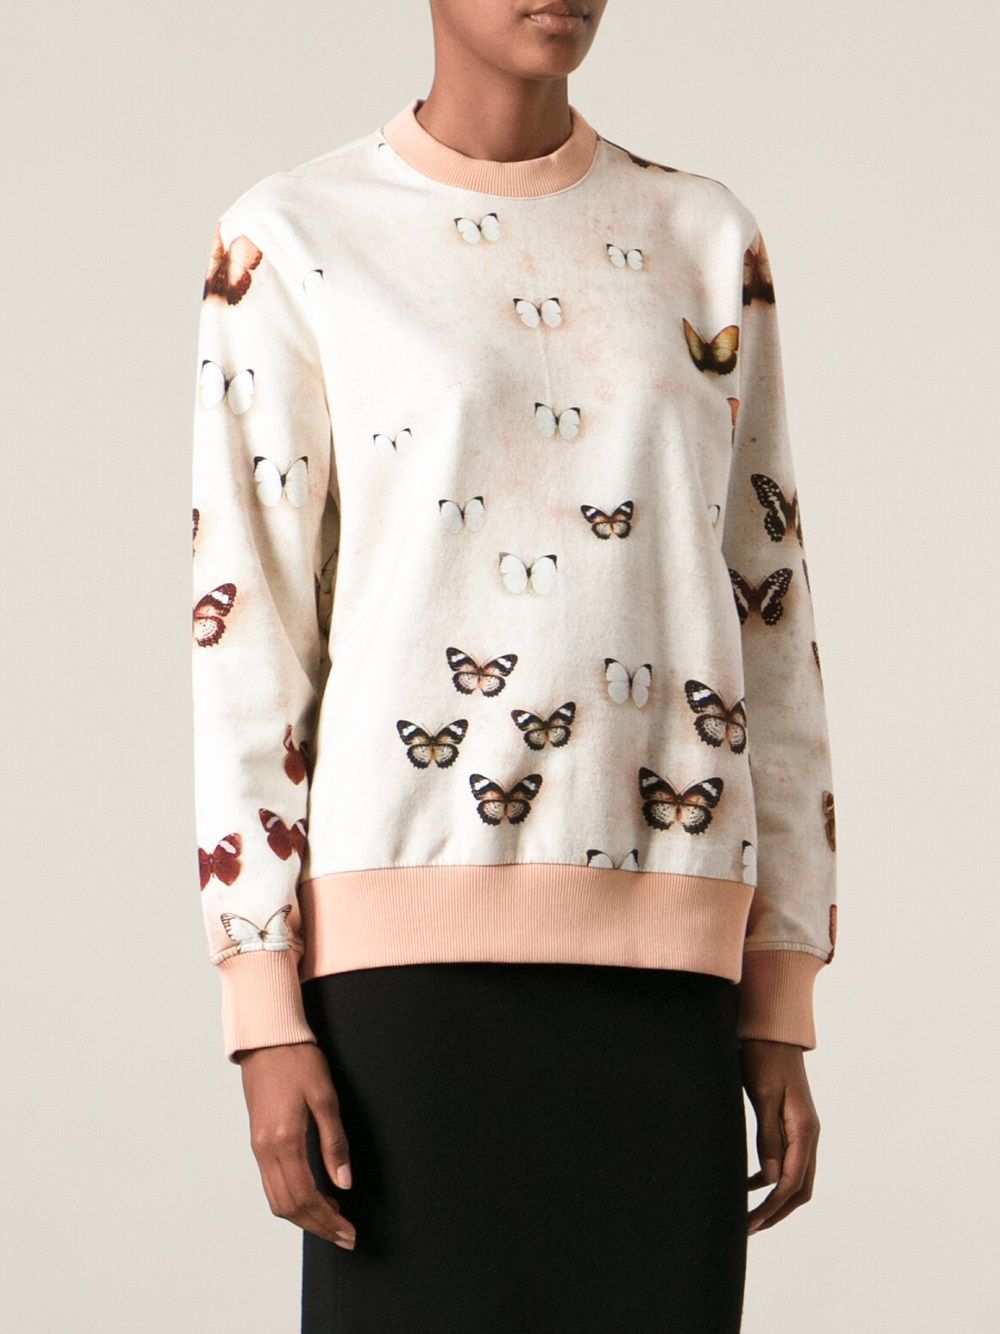 фото Givenchy свитер в принт с бабочками